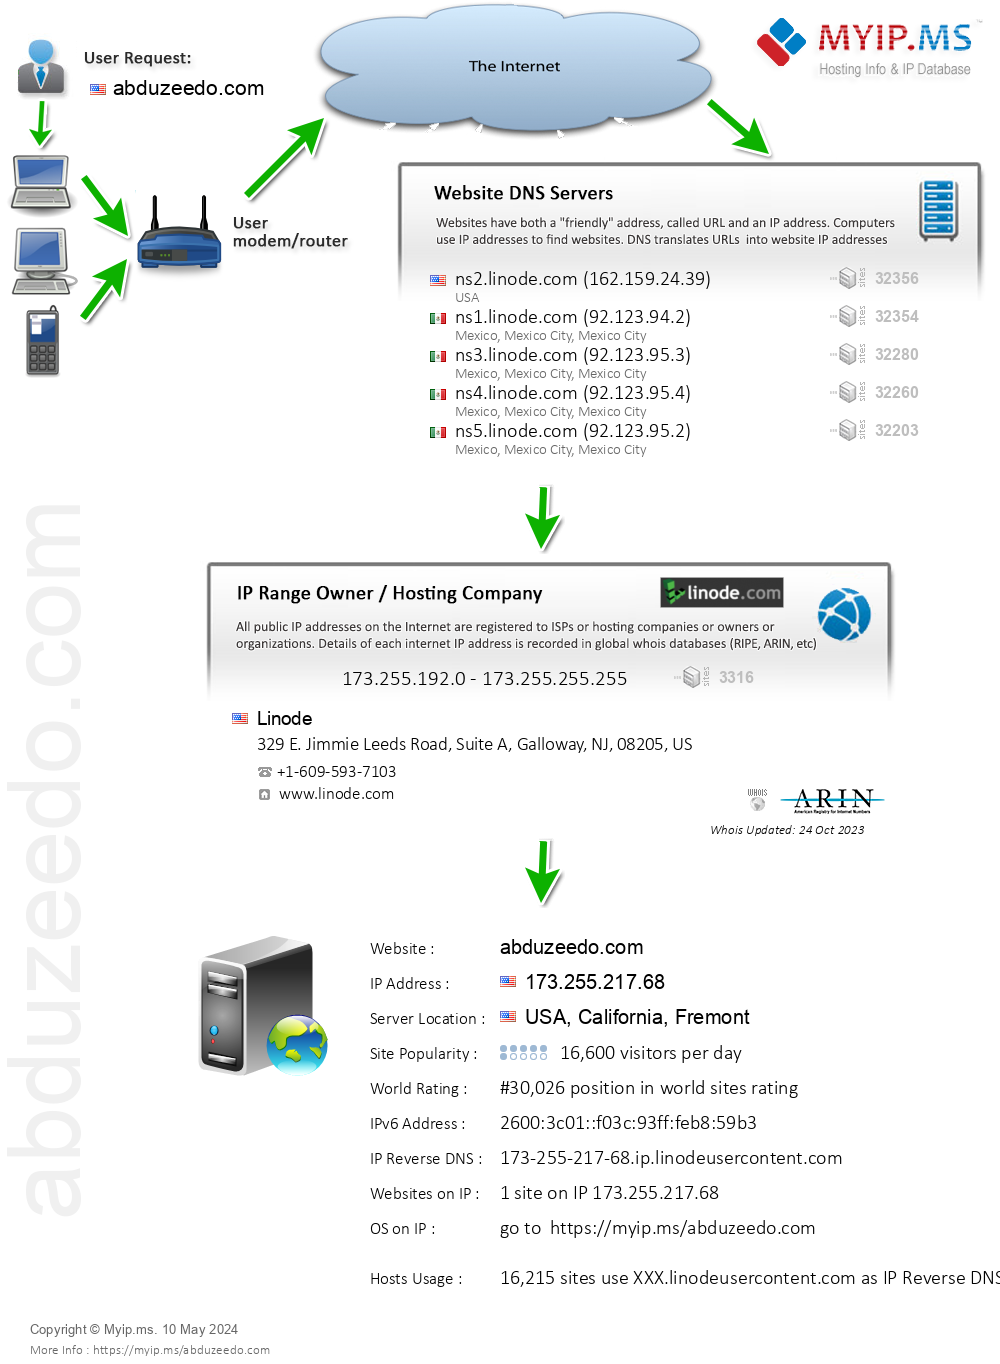 Abduzeedo.com - Website Hosting Visual IP Diagram